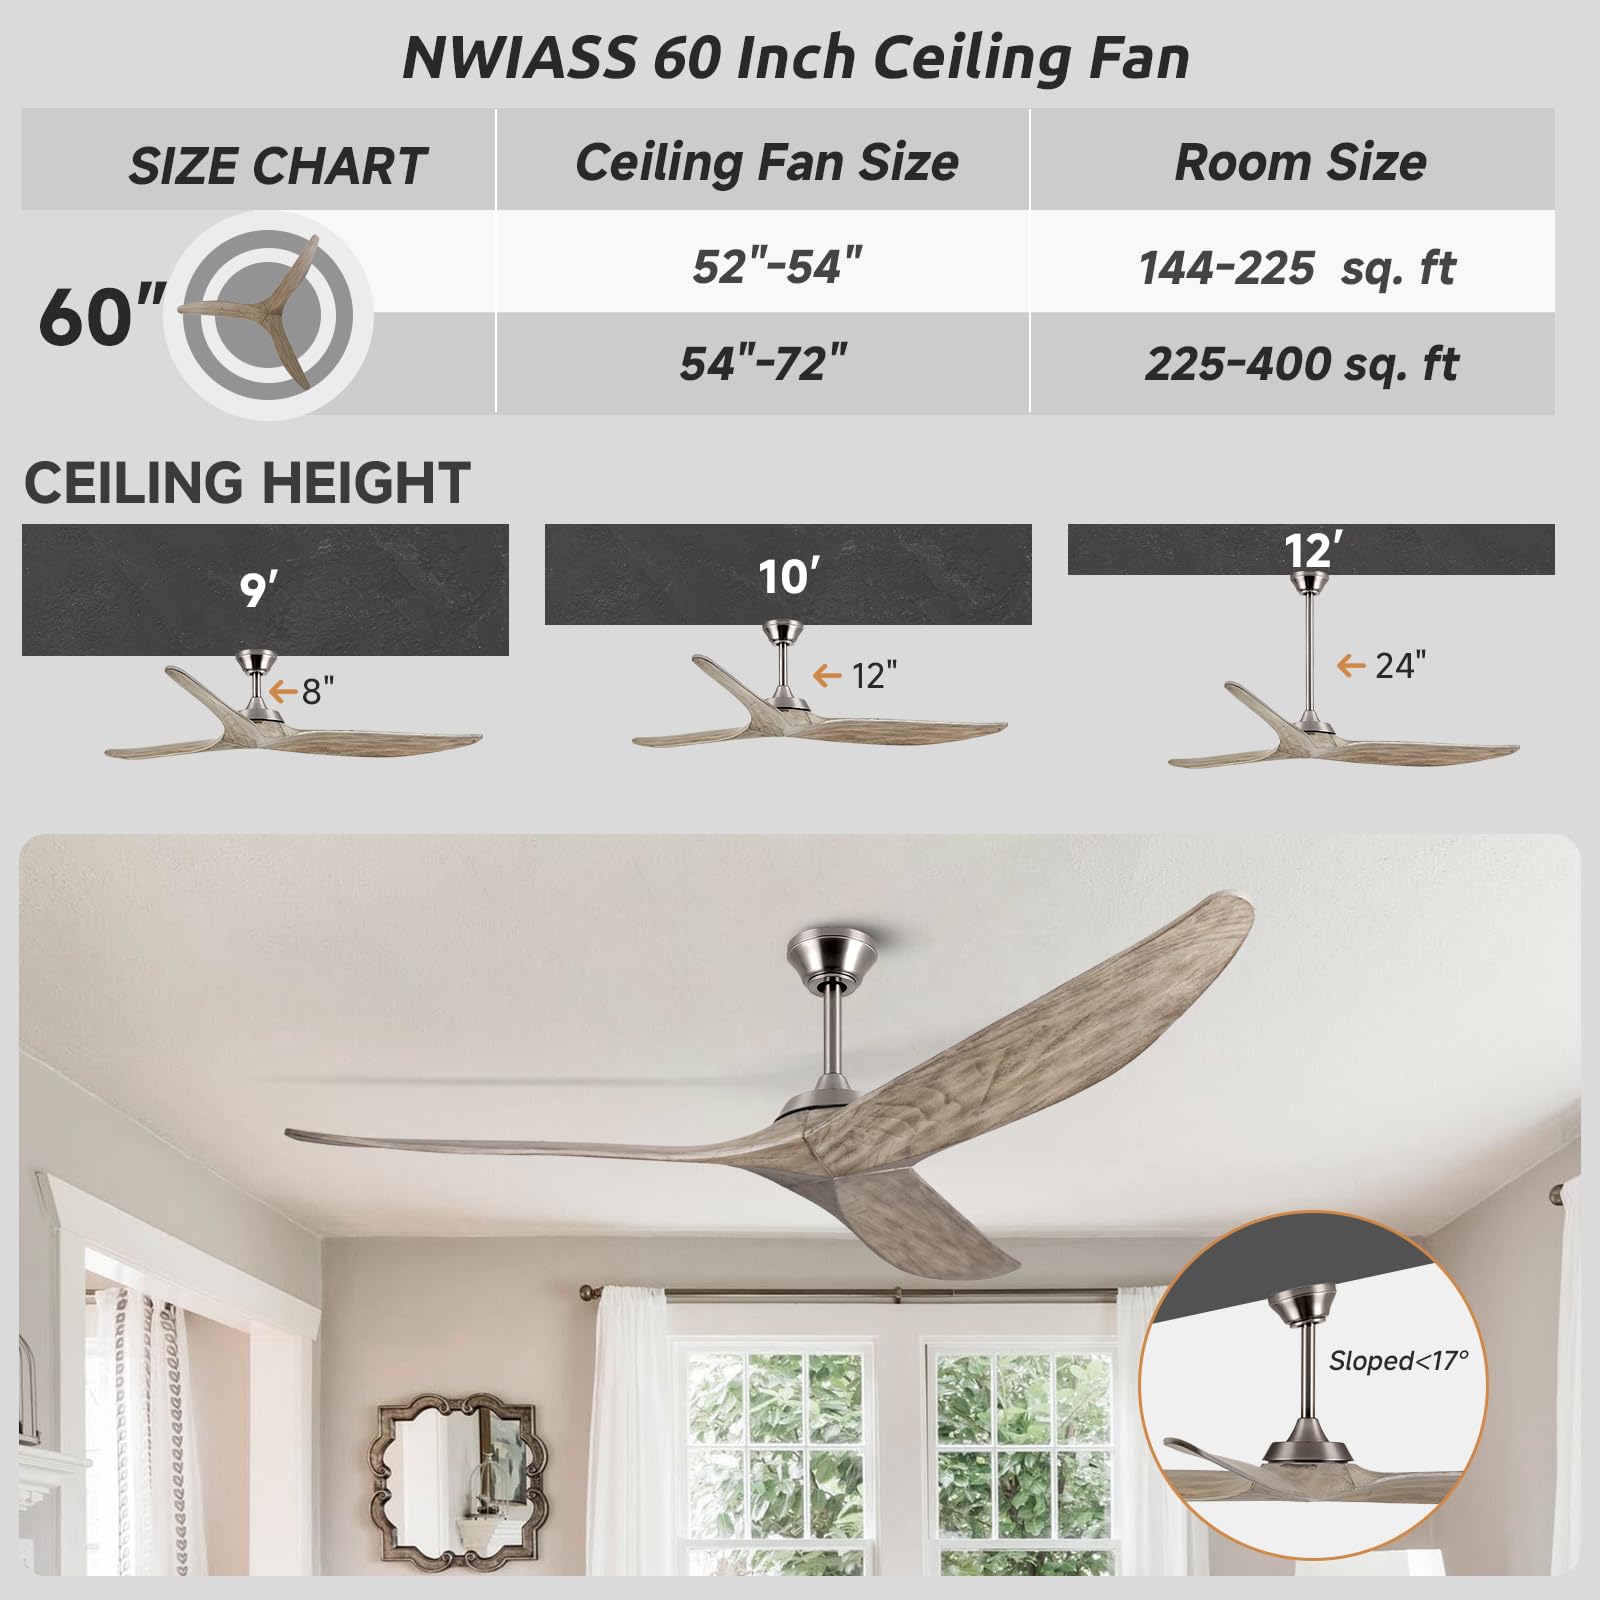 NWIASS 60 Inch Ceiling Fan No Light, Large Outdoor Ceiling Fan